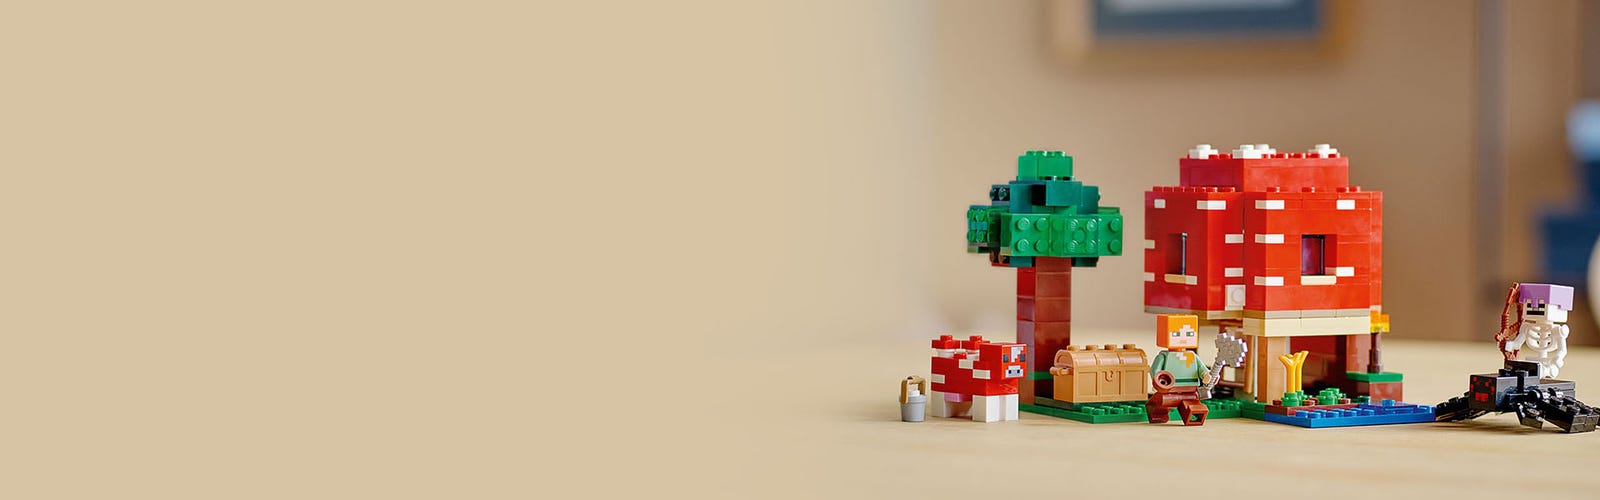 LEGO Minecraft Mushroom House Set with Figures - UK